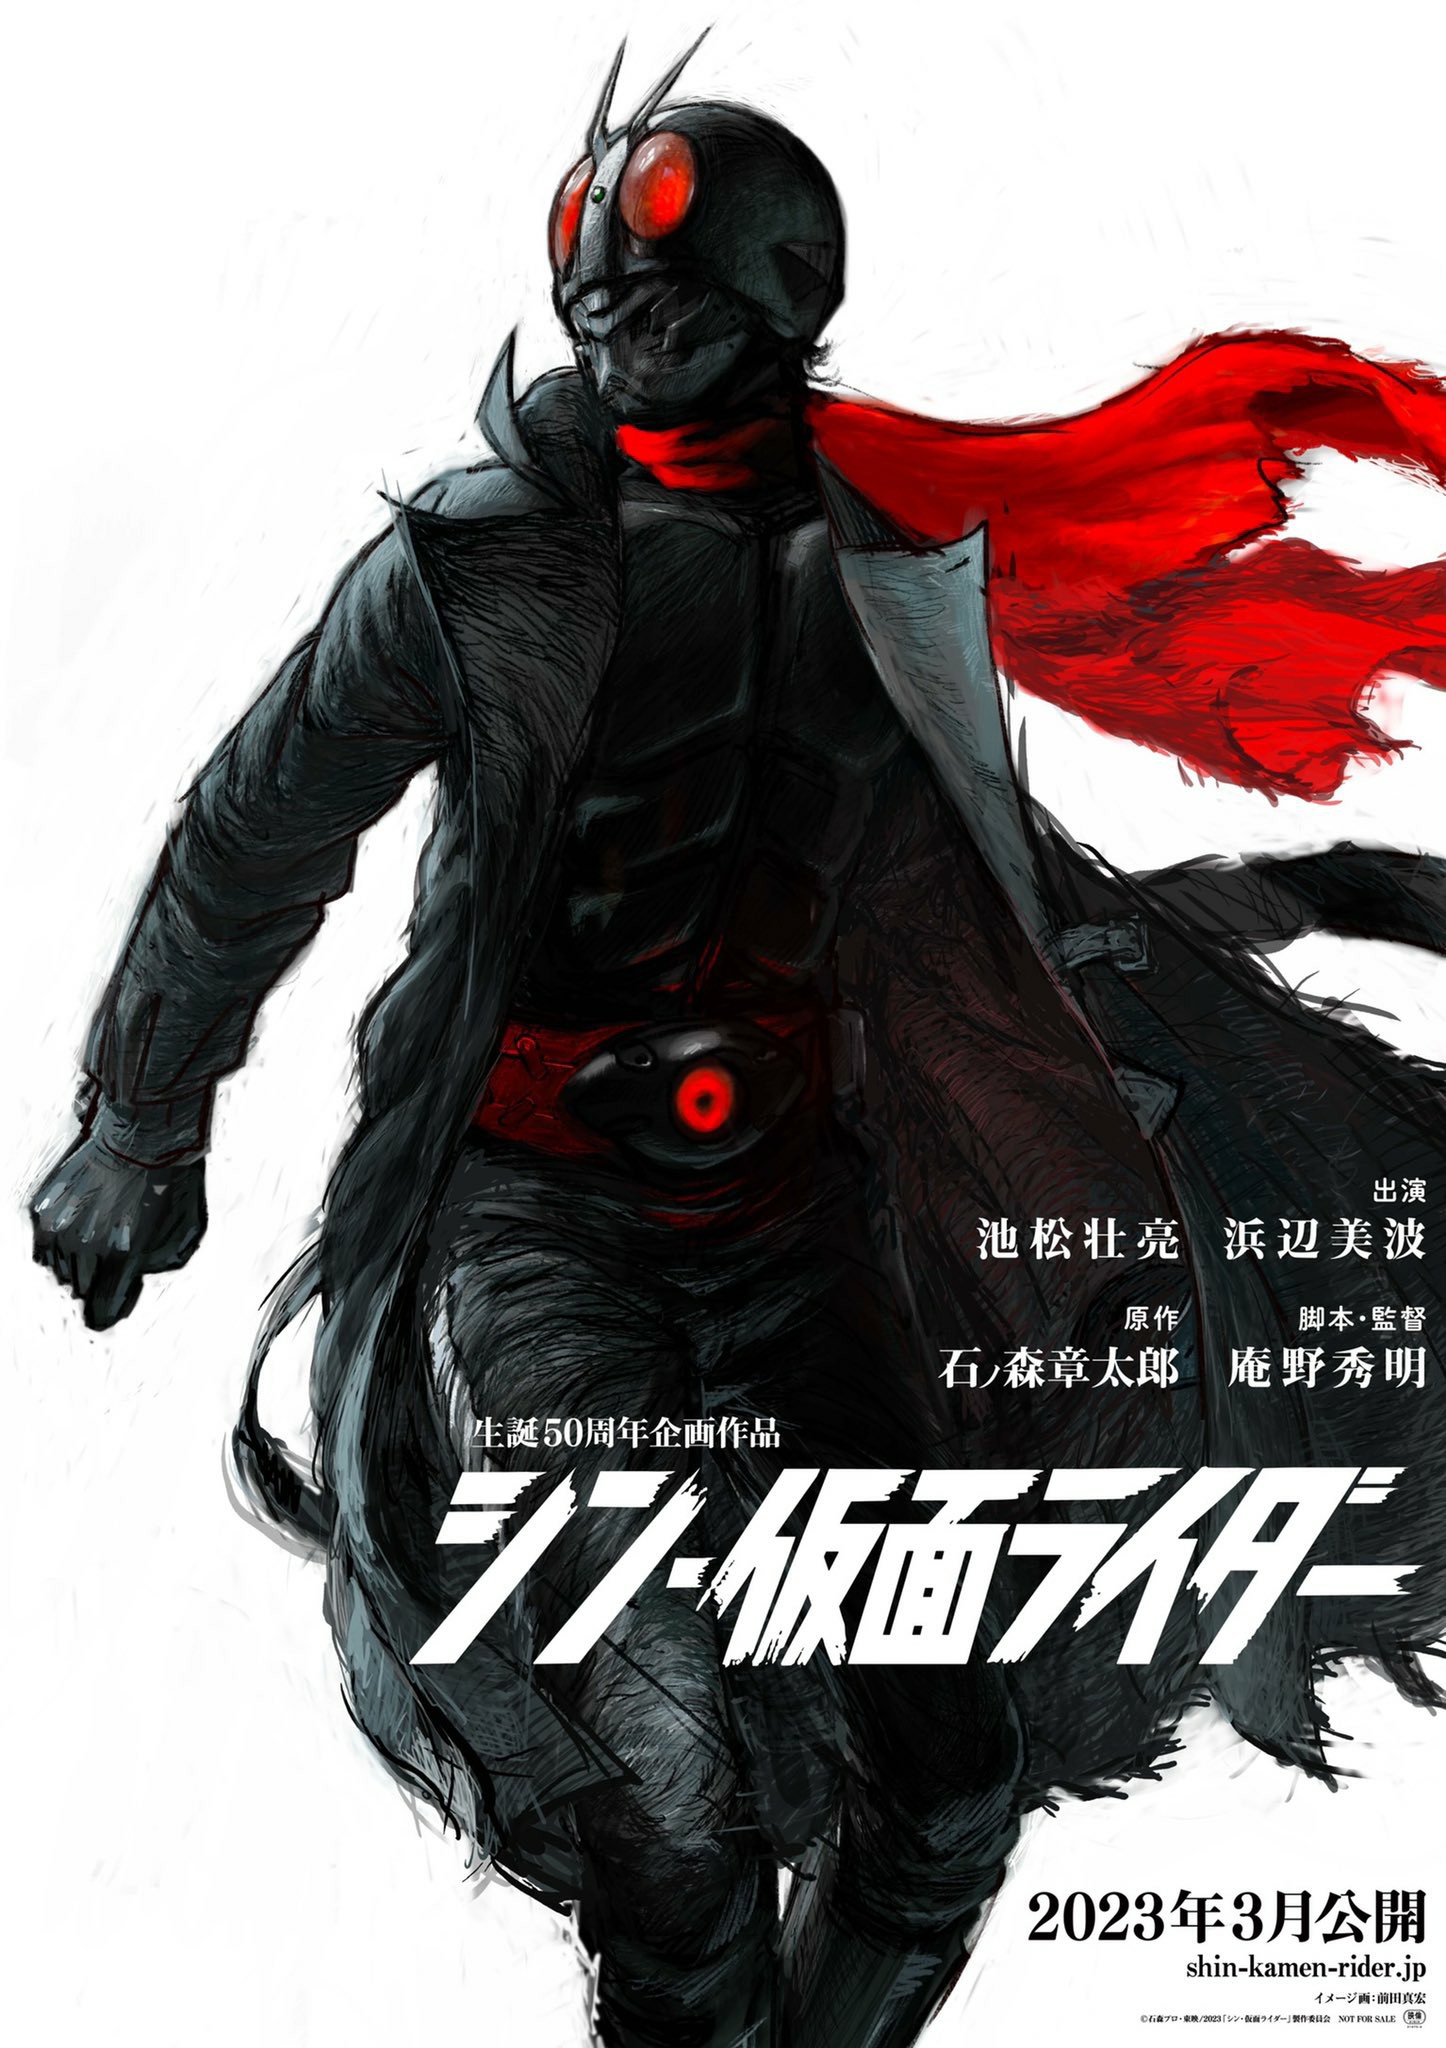 《新·假面骑士》公布假面骑士2号形象 由前田真宏绘制